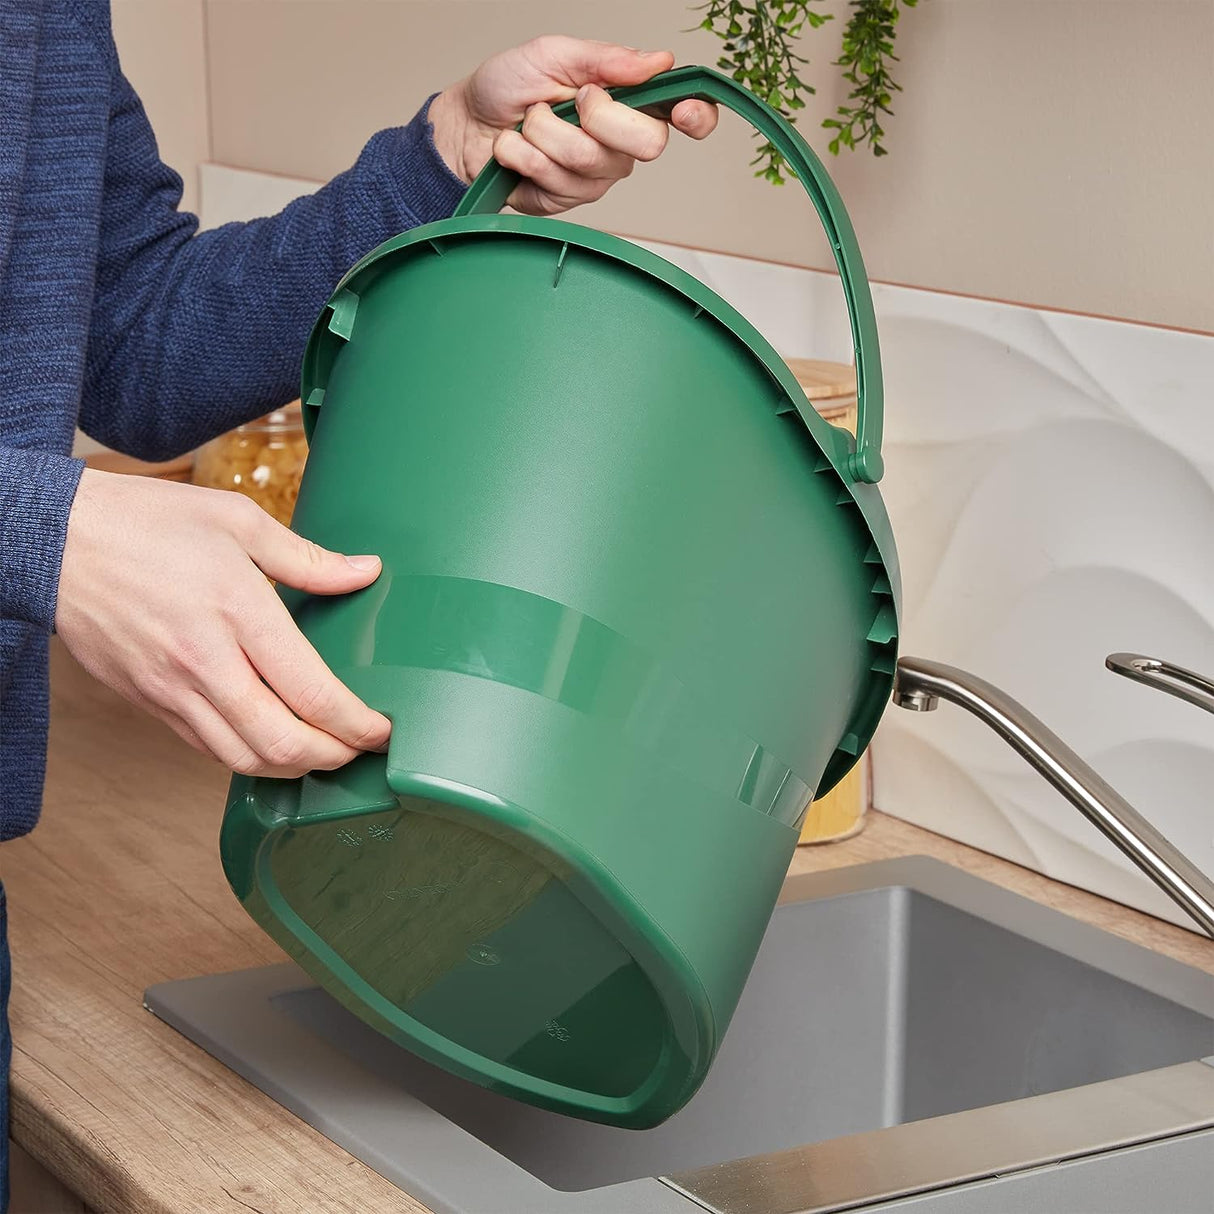 Balde Spontex Eco Green Materiais 100% reciclados com alça embutida no fundo do balde, capacidade de 10L, 19800212, verde